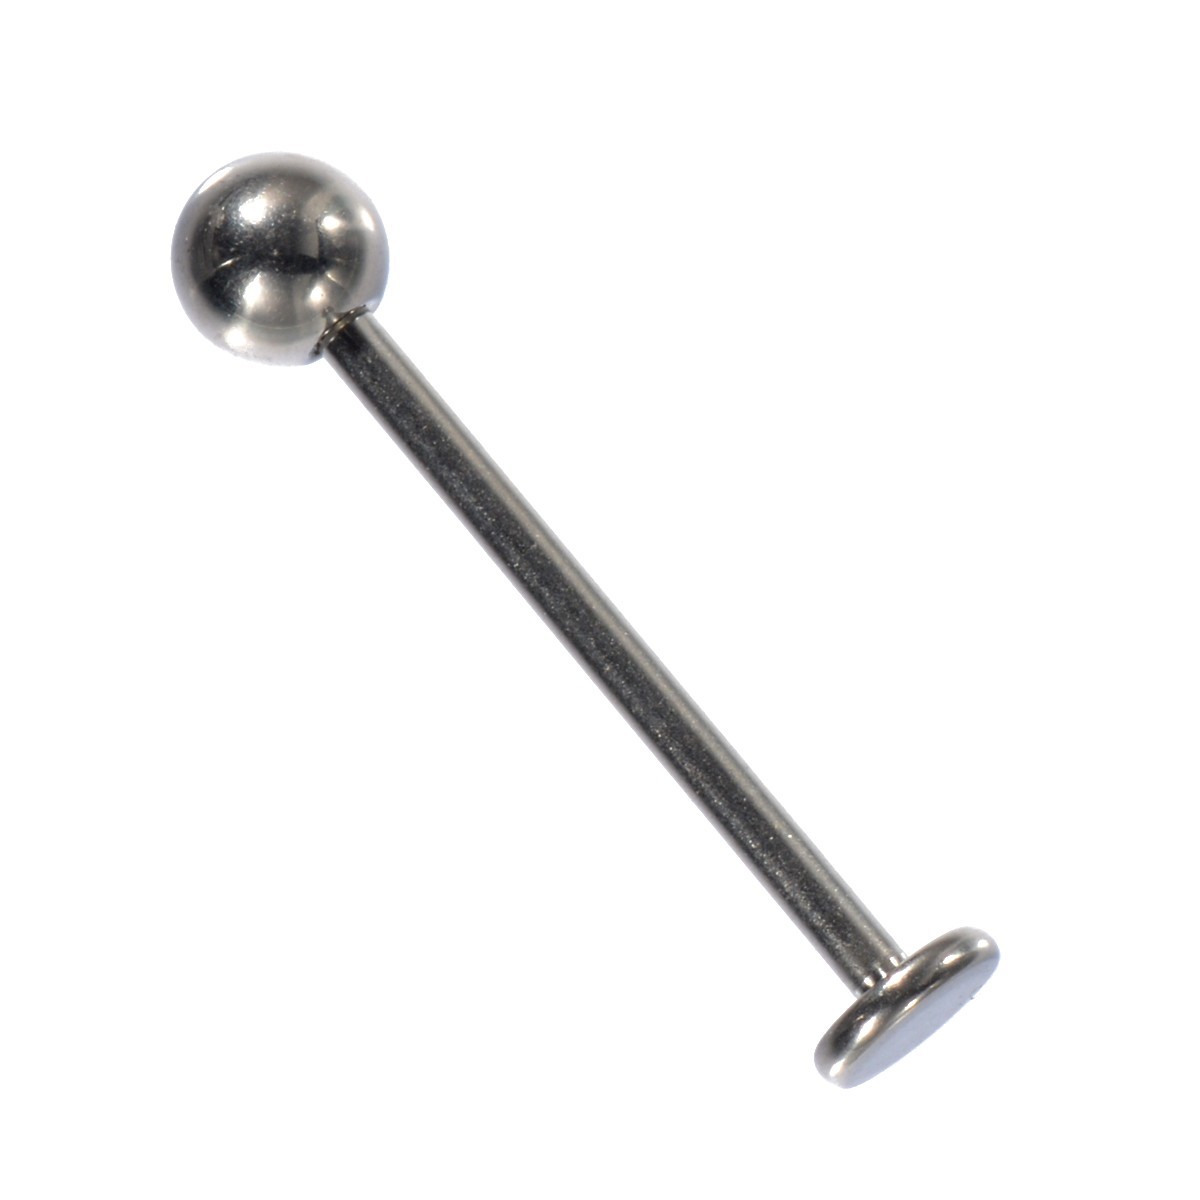 [ продажа по отдельности /1 шт ] пирсинги titanium la Brett stud стандартный 16 мера внутренний диаметр 16.0mm мяч 4.0mm диск 4.0mm серебряный цвет 